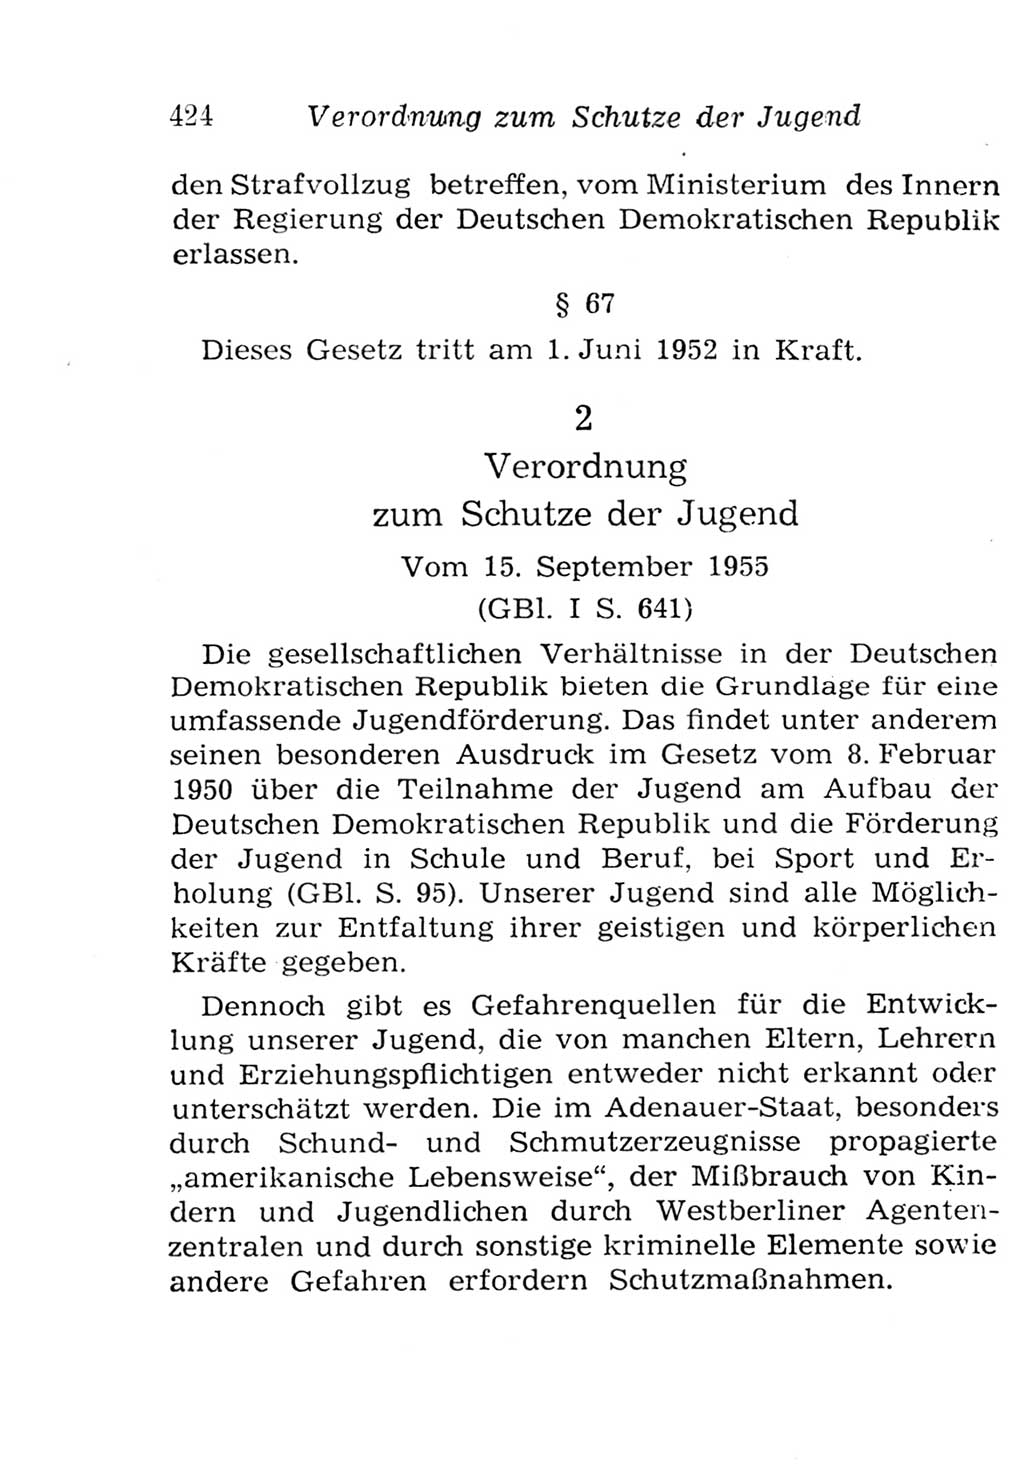 Strafgesetzbuch (StGB) und andere Strafgesetze [Deutsche Demokratische Republik (DDR)] 1957, Seite 424 (StGB Strafges. DDR 1957, S. 424)